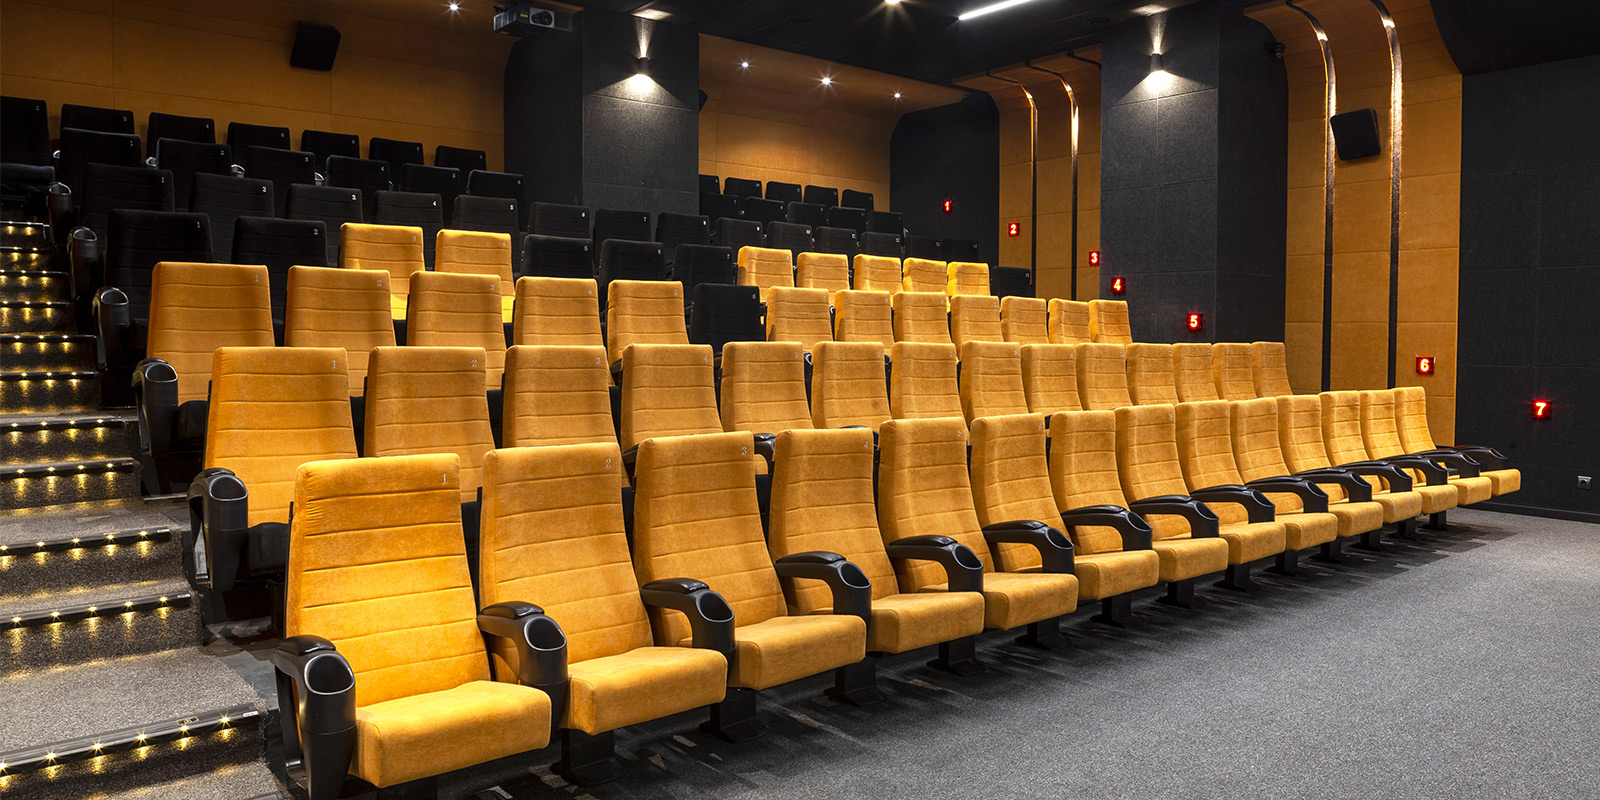 Shemiran Center cinema hall